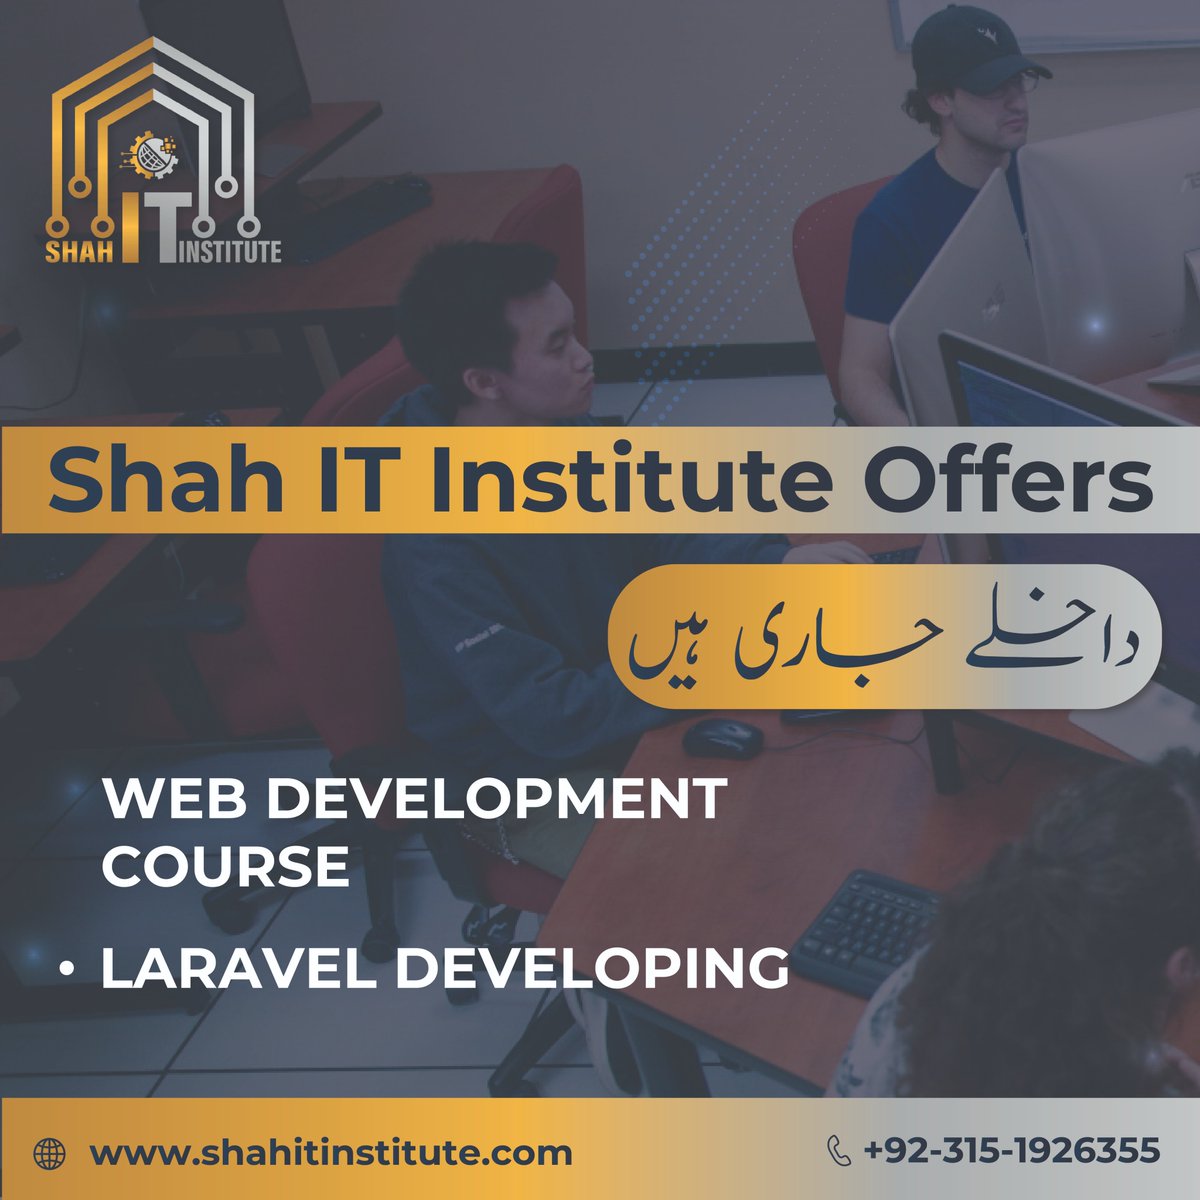 𝗪𝗲'𝗿𝗲 𝗼𝗳𝗳𝗲𝗿𝗶𝗻𝗴 𝗪𝗲𝗯 𝗗𝗲𝘃𝗲𝗹𝗼𝗽𝗺𝗲𝗻𝘁 𝗰𝗼𝘂𝗿𝘀𝗲 𝘂𝘀𝗶𝗻𝗴 𝗟𝗮𝗿𝗮𝘃𝗲𝗹

𝗘𝗻𝗿𝗼𝗹𝗹 𝗡𝗼𝘄
𝗰𝗼𝗻𝘁𝗮𝗰𝘁 𝘂𝘀 : +𝟵𝟮 𝟯𝟭𝟱 𝟭𝟵𝟮 𝟲𝟯𝟱𝟱

#webdevelopment #traininginstitute #itinstitute #websitedevelopment #webcourse #course #shahitinstitute